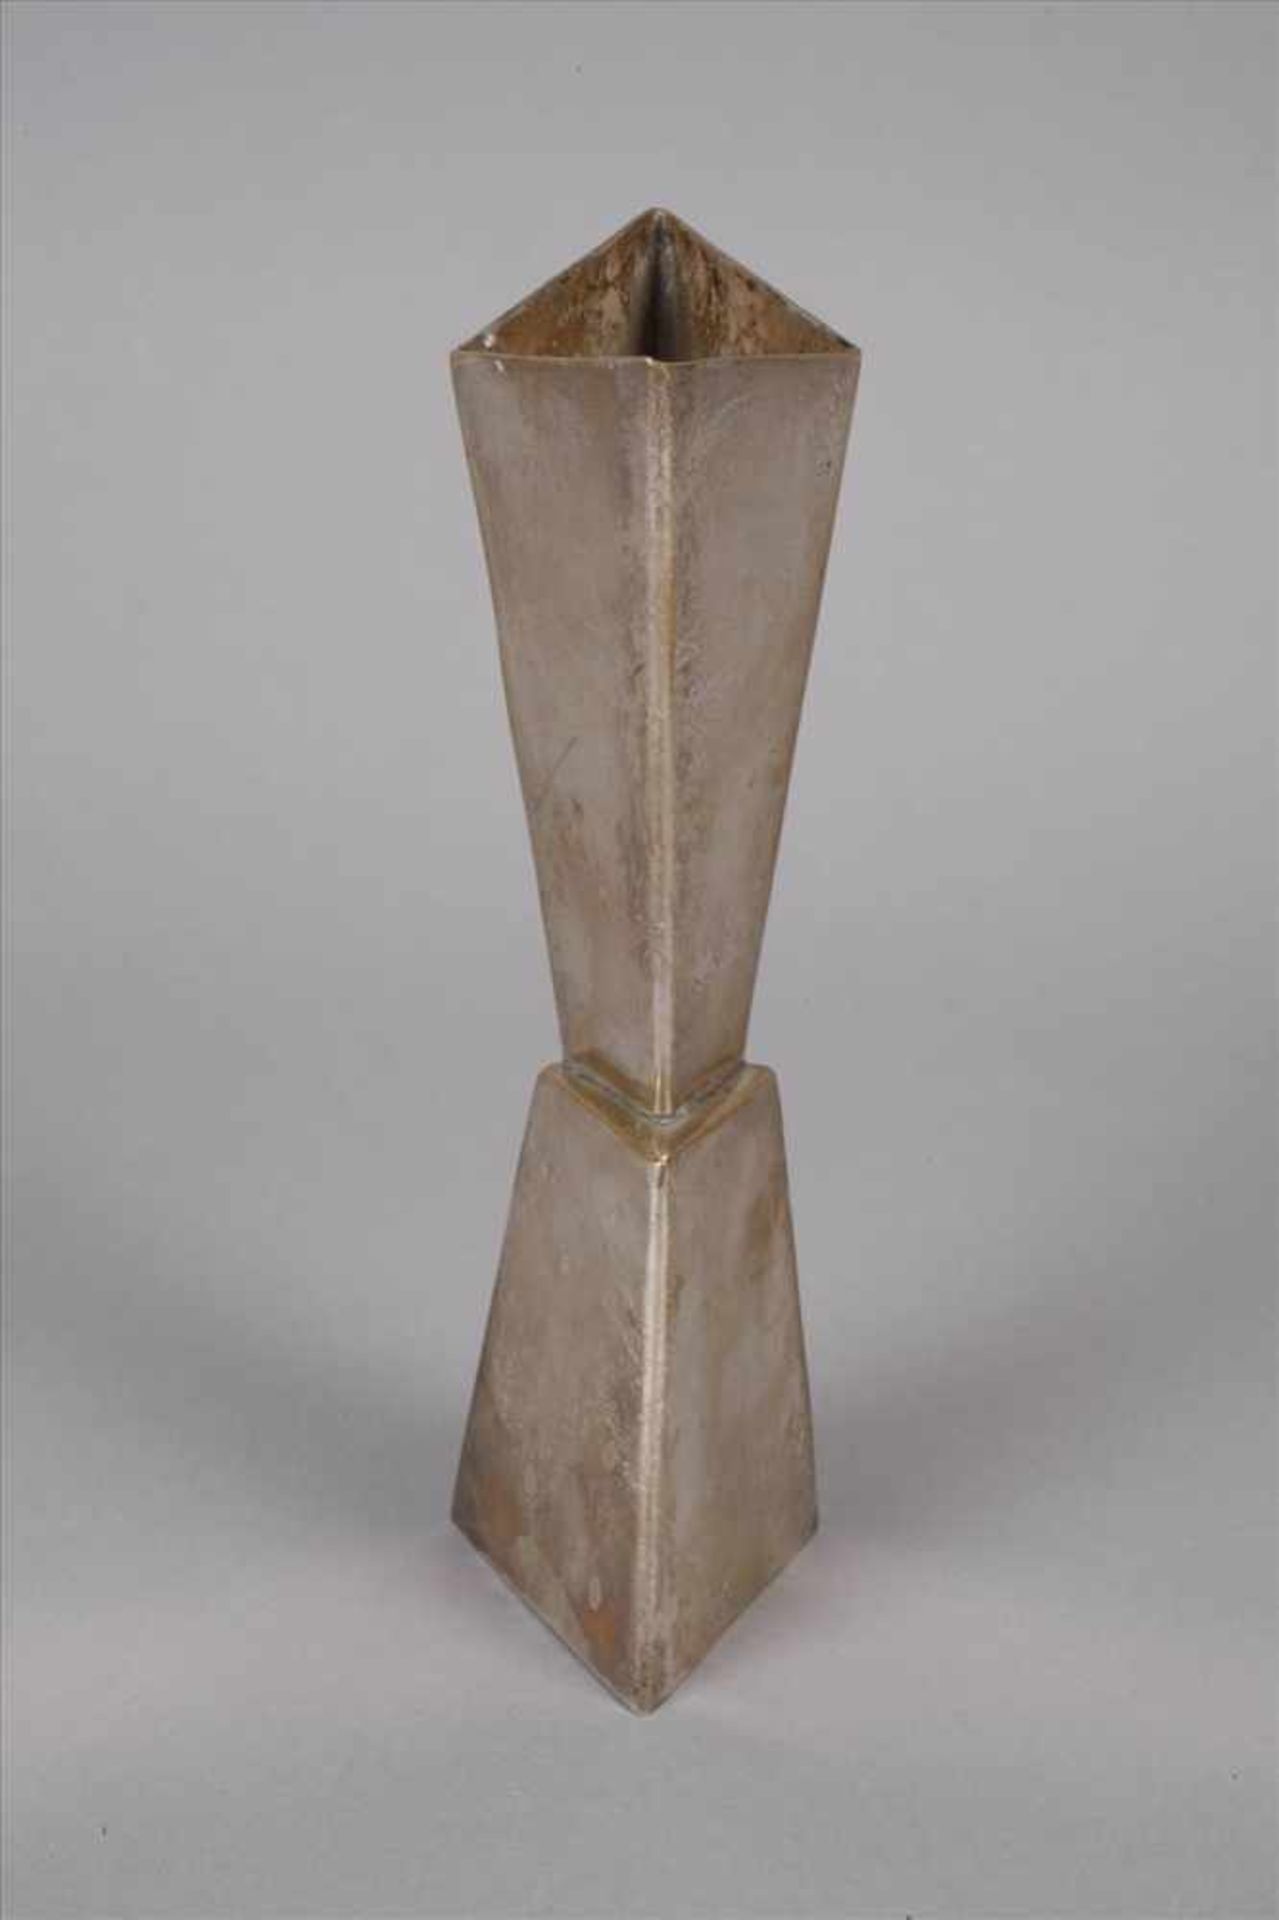 Kubistische Vasewohl 1930er Jahre, ungemarkt, Messing versilbert, Gebrauchsspuren, H 21 cm. - Bild 2 aus 5